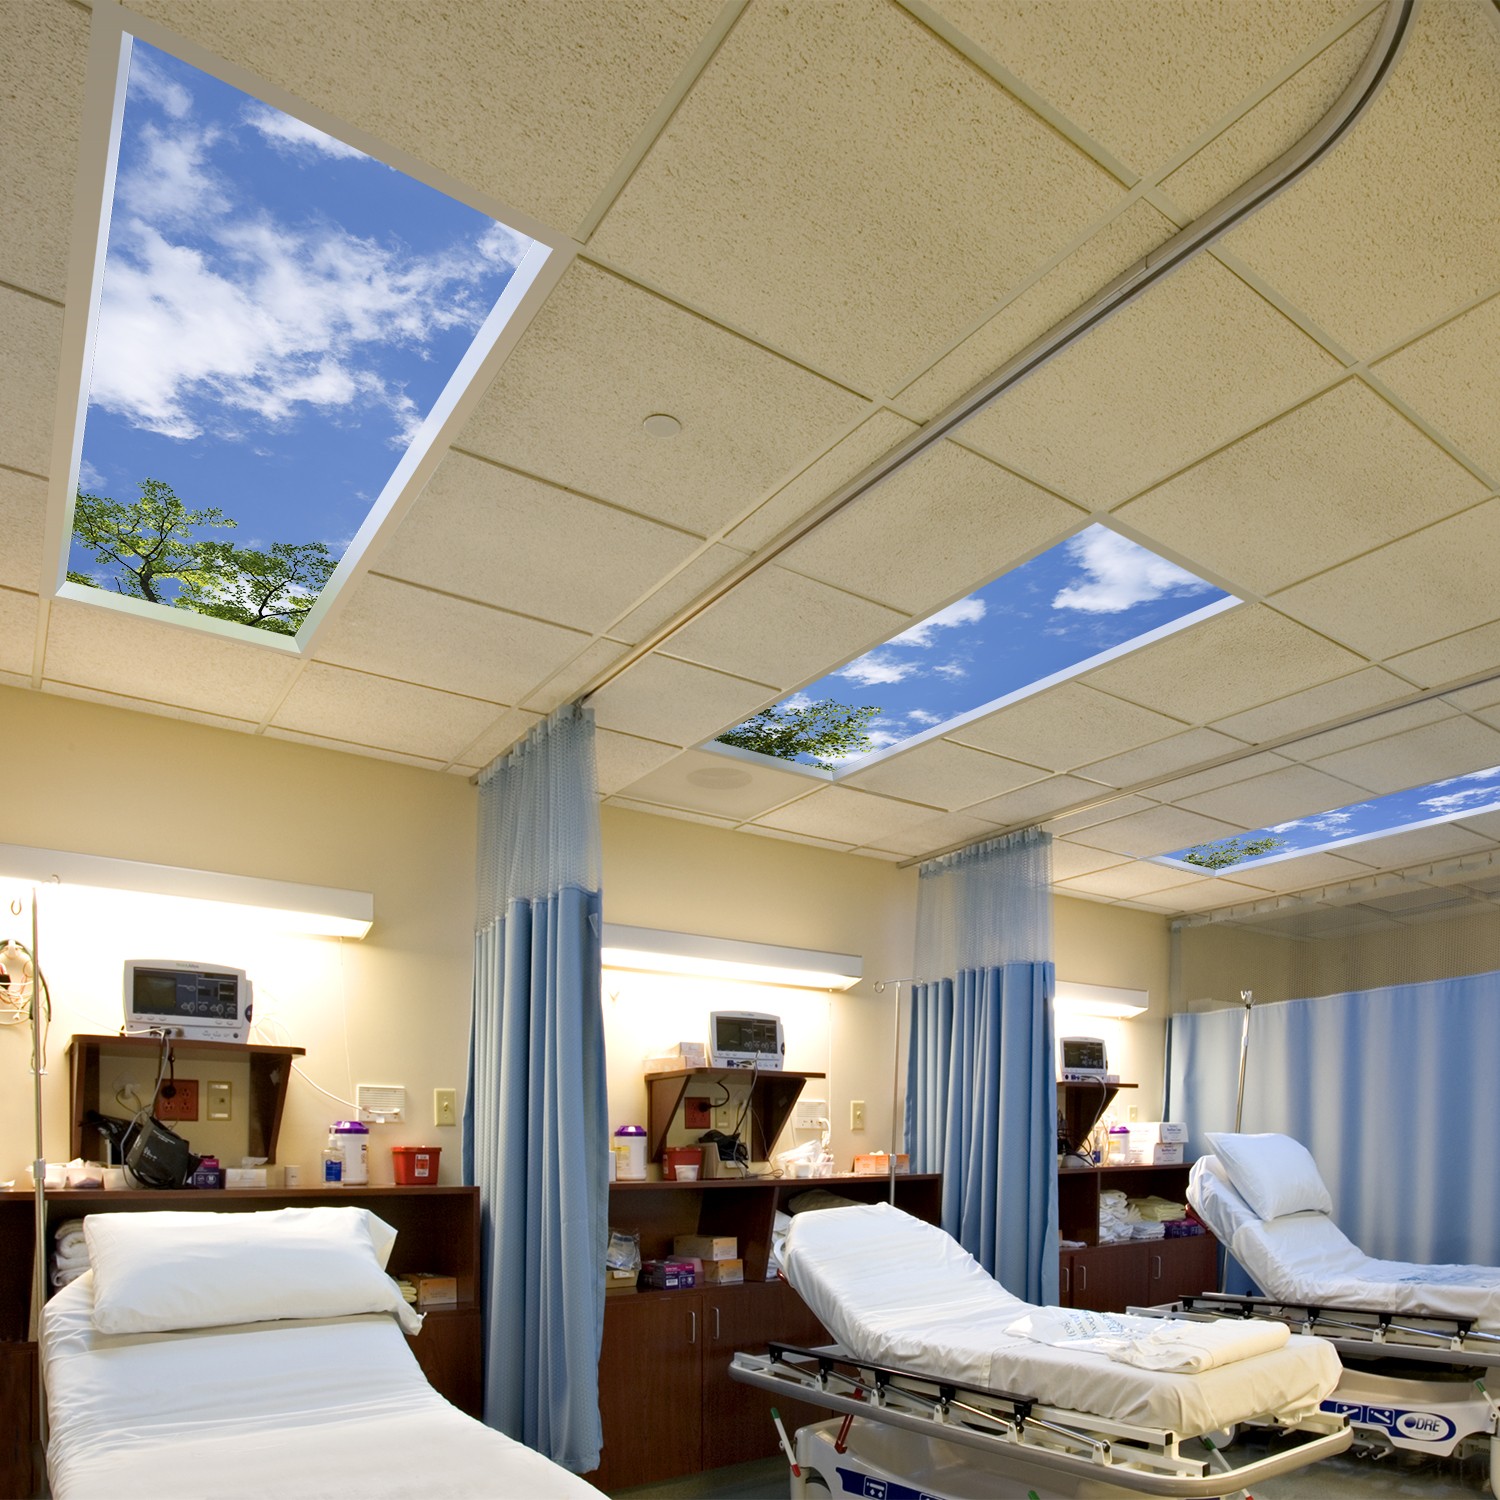 thiết kế giếng trời - Tiêu chuẩn thiết kế mới tại nhiều bệnh viện lớn